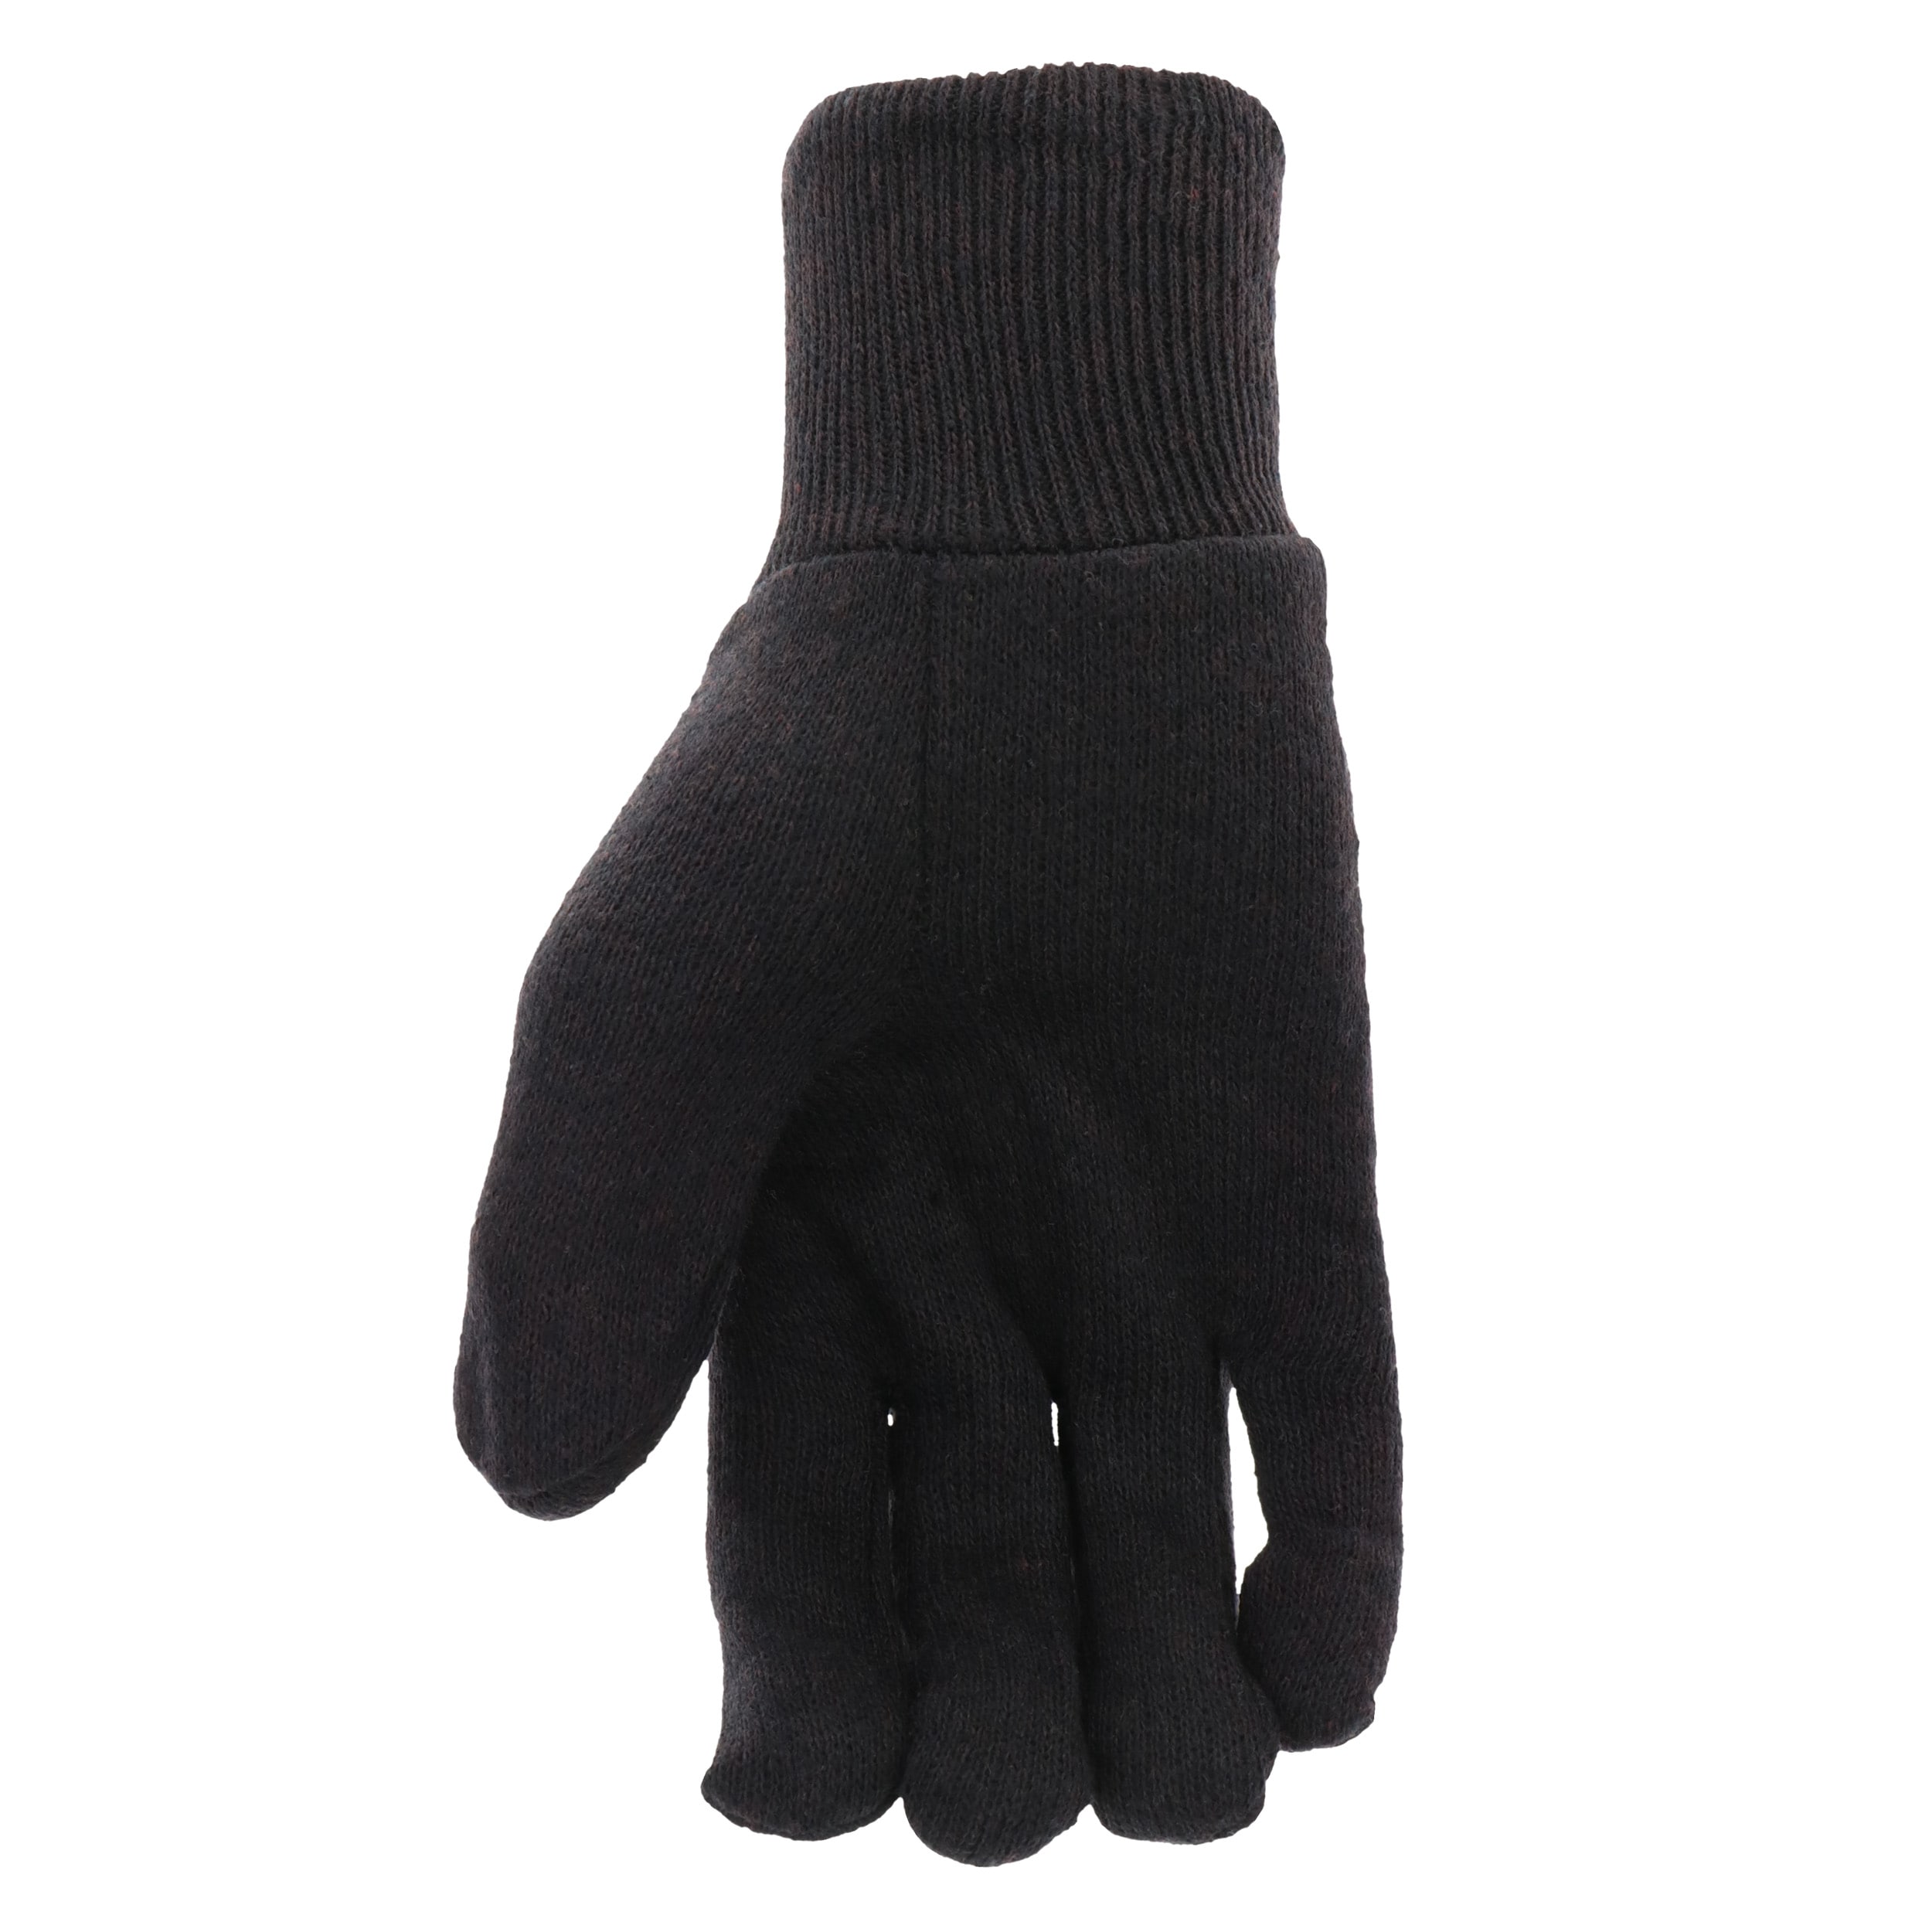 Brown Jersey Cotton Work Gloves-Wholesale Price-Cheap Work Gloves